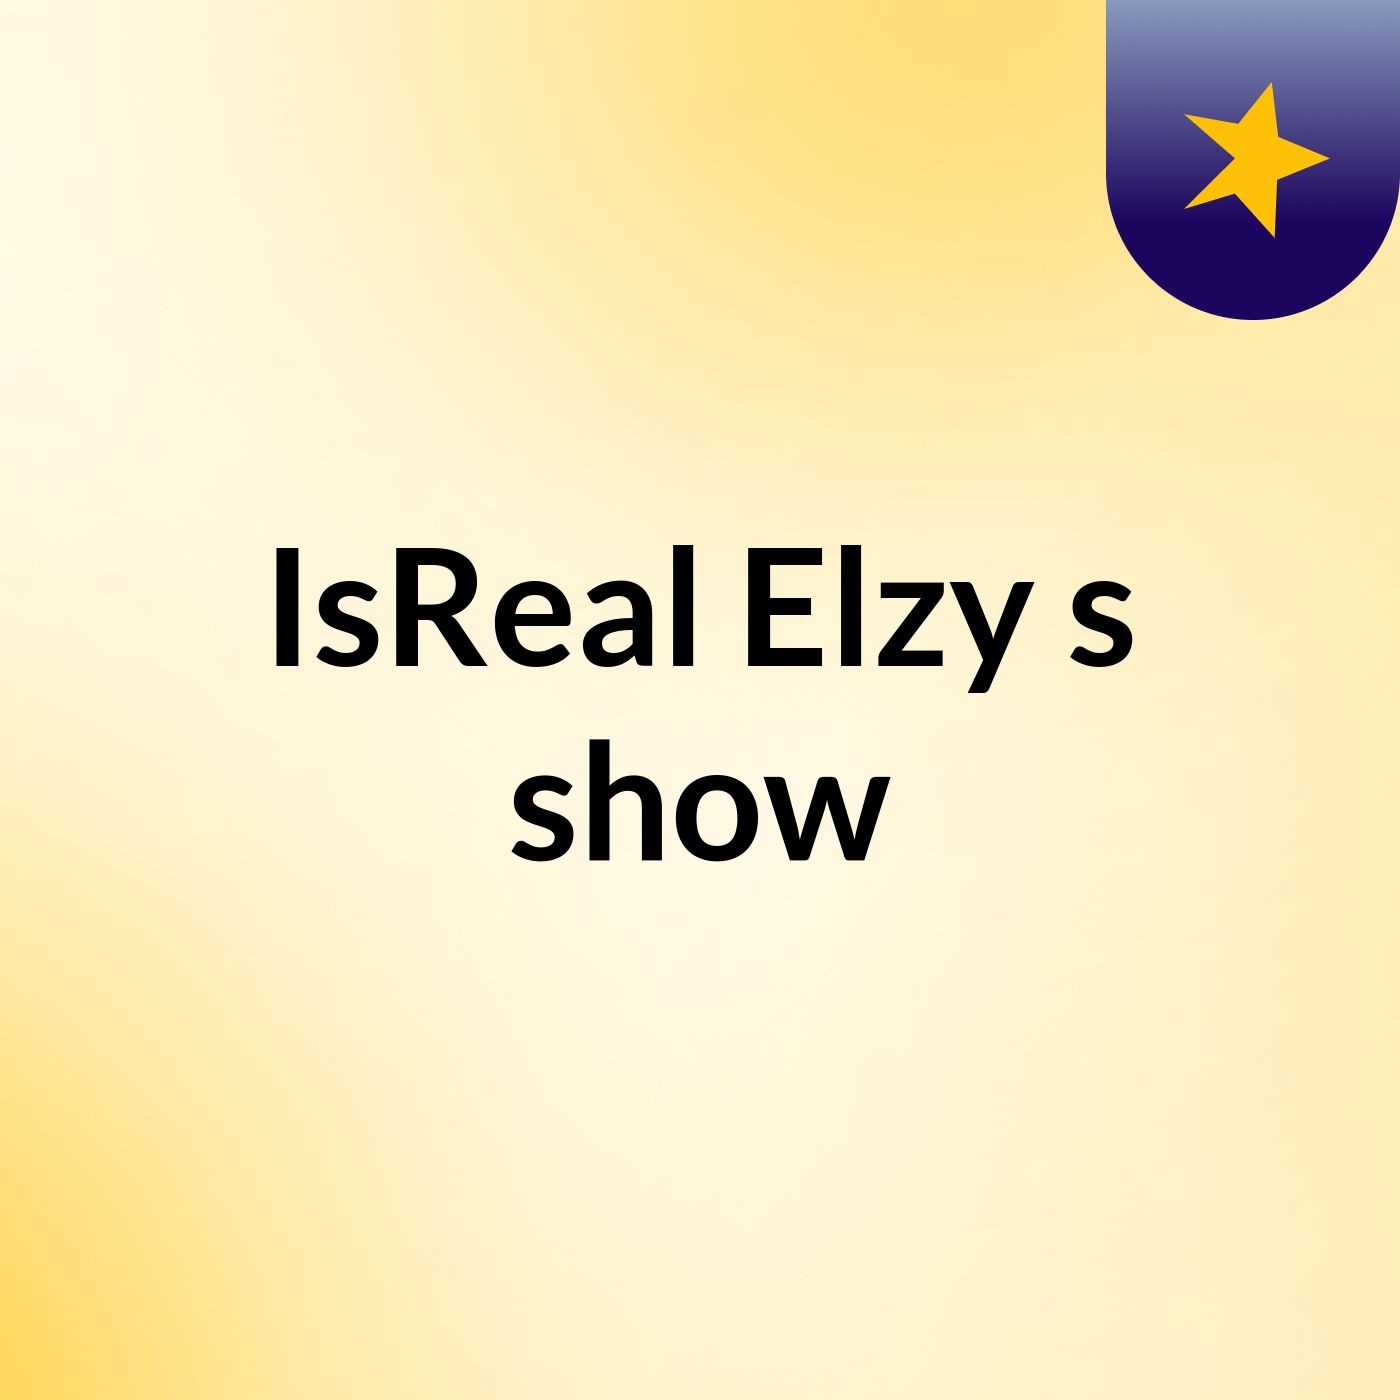 Episode 5 - IsReal Elzy's show